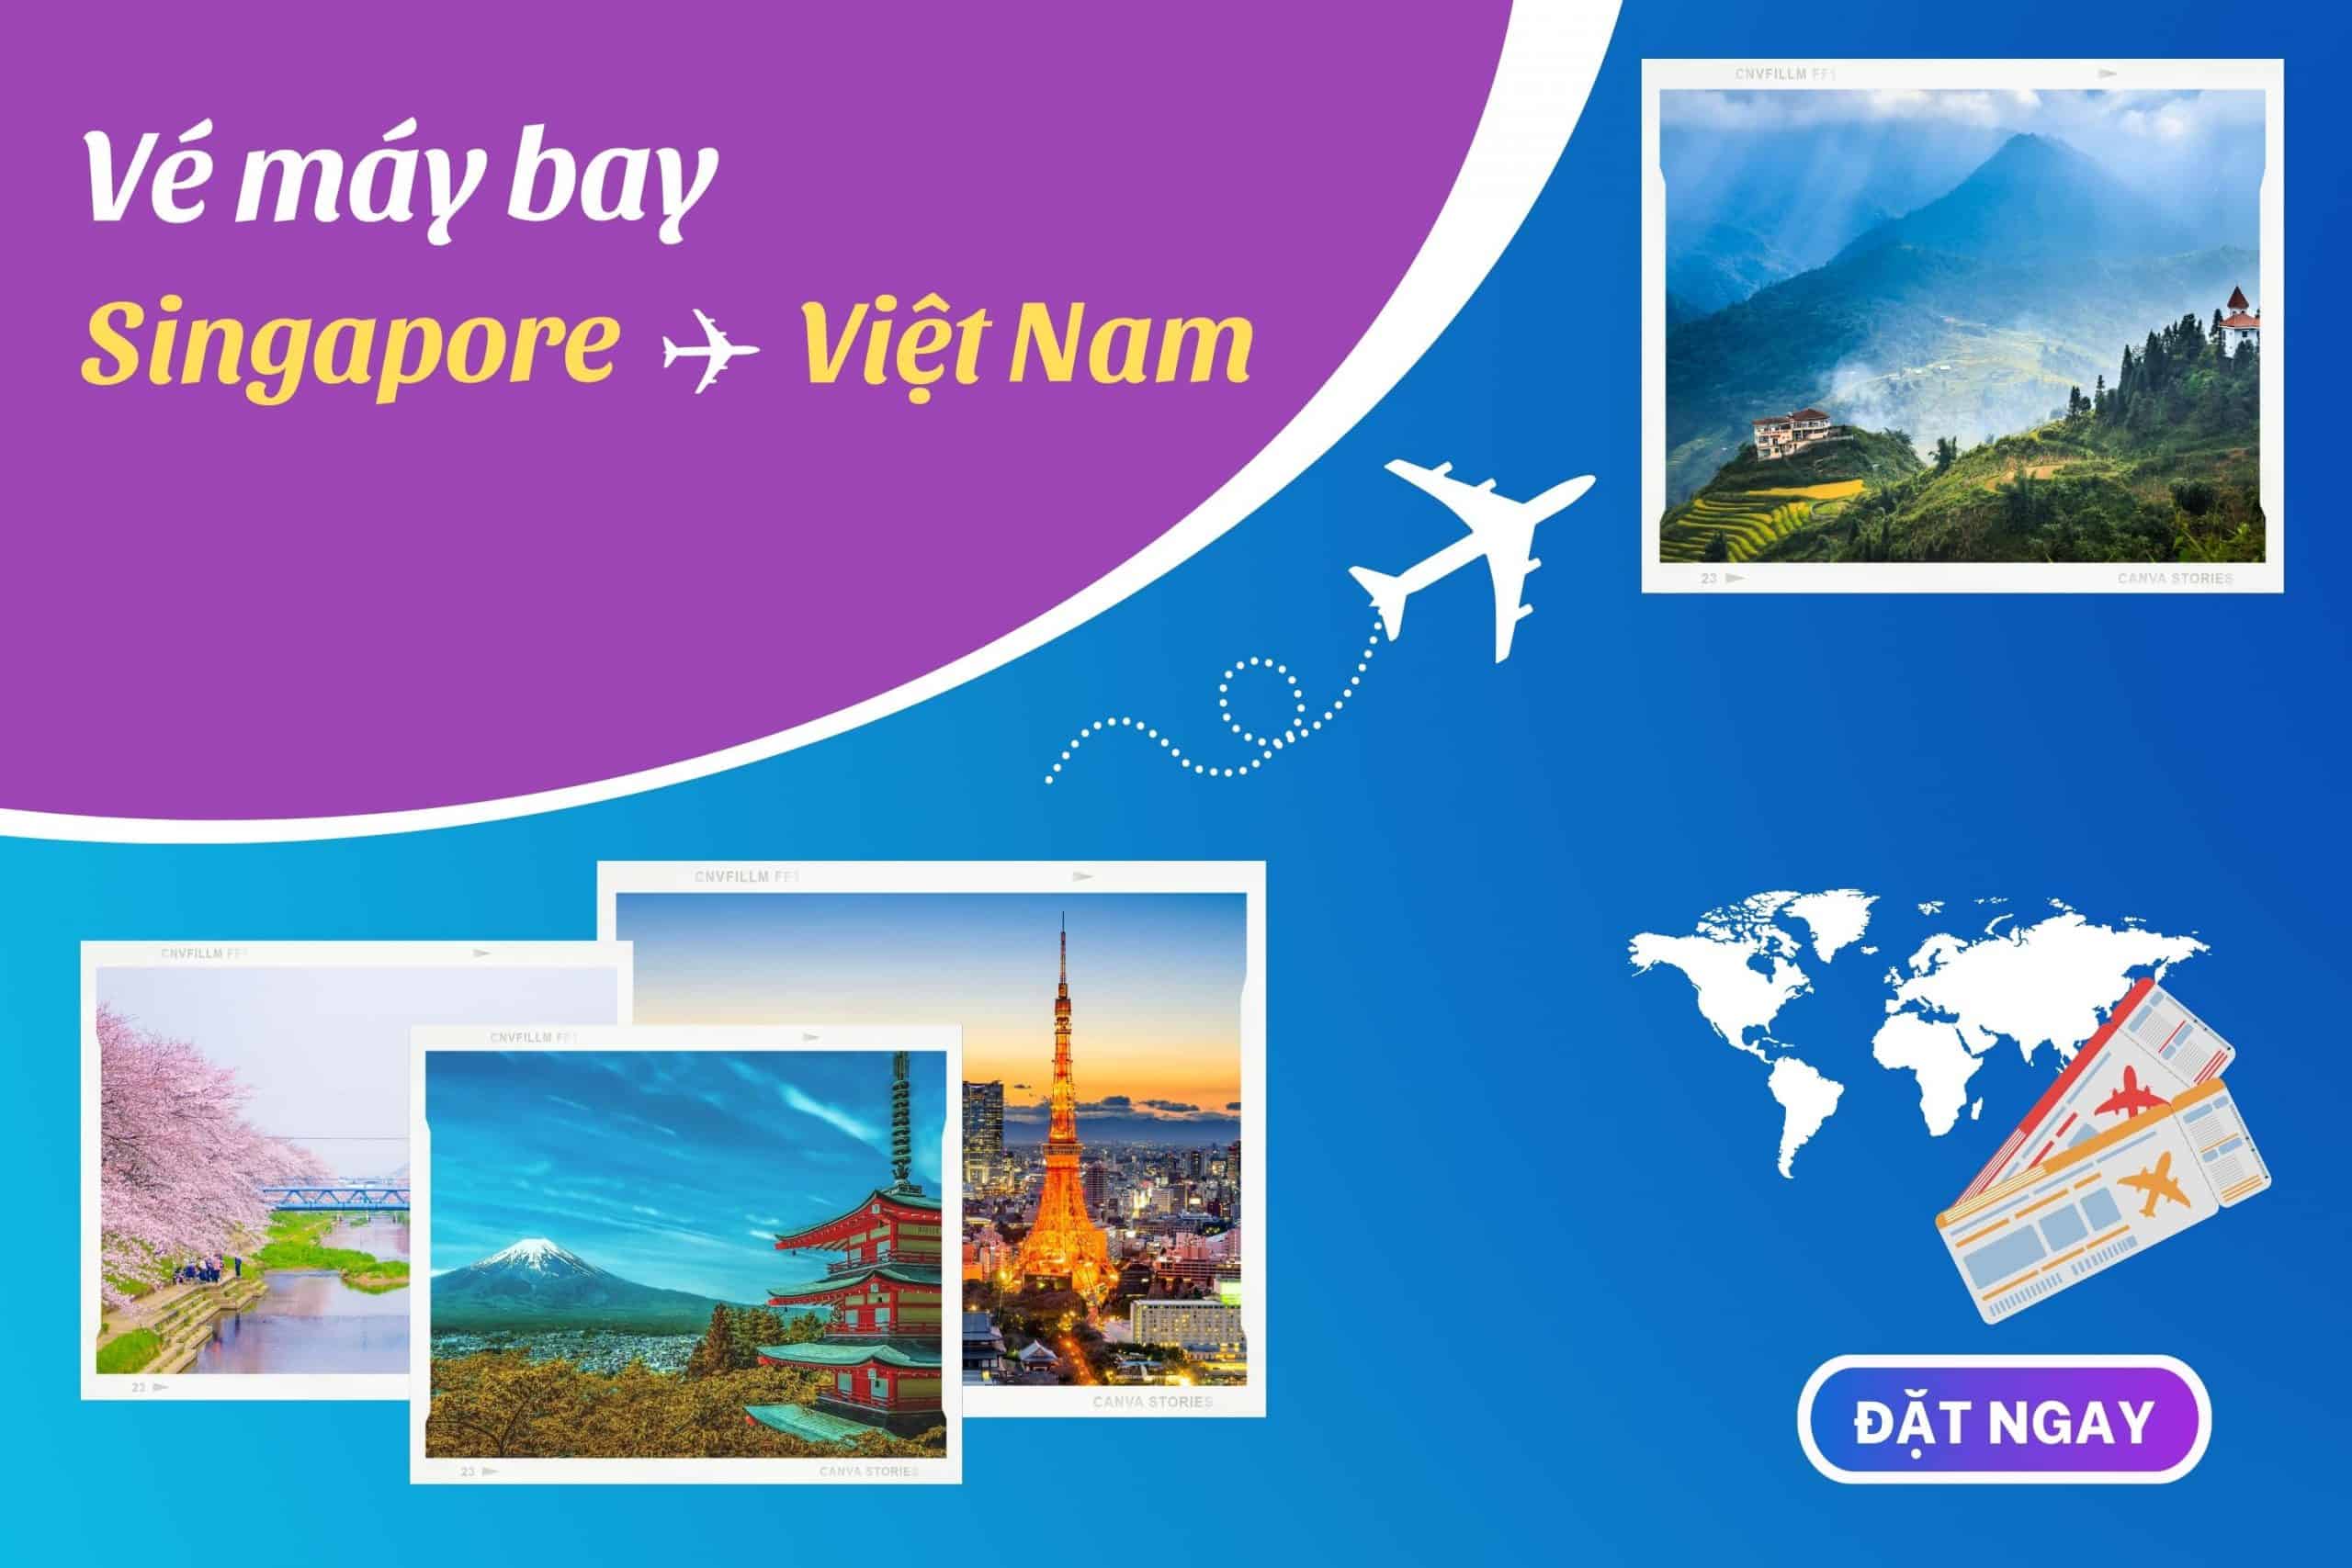 Vé máy bay từ Singapore về Việt Nam Singapore Airlines